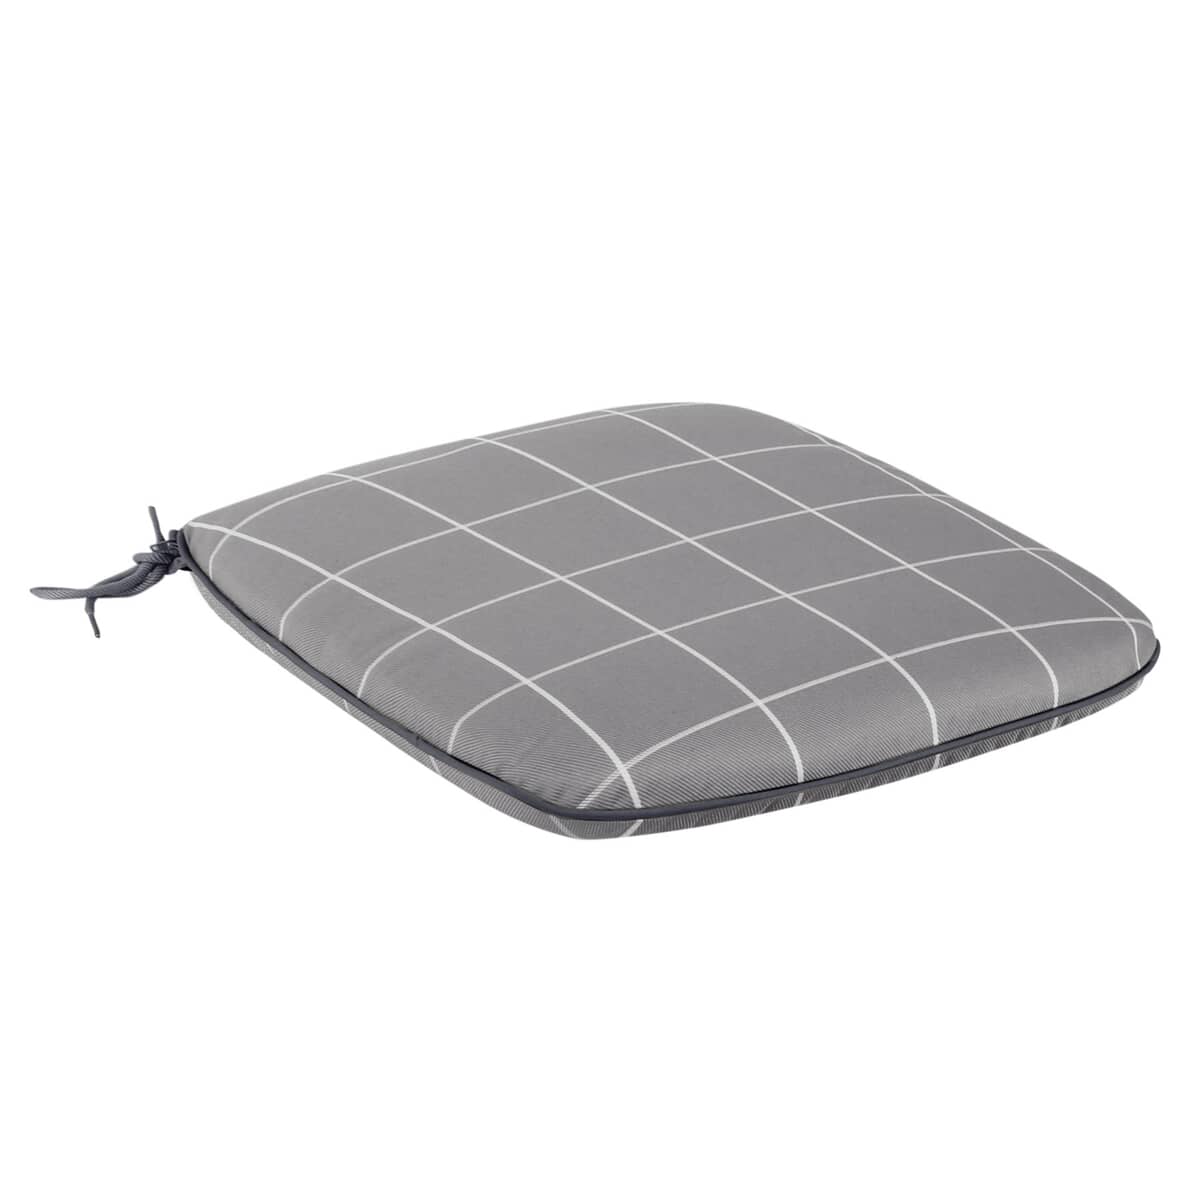 Kettler Novero Footstool/Side Table Cushion - Slate Check